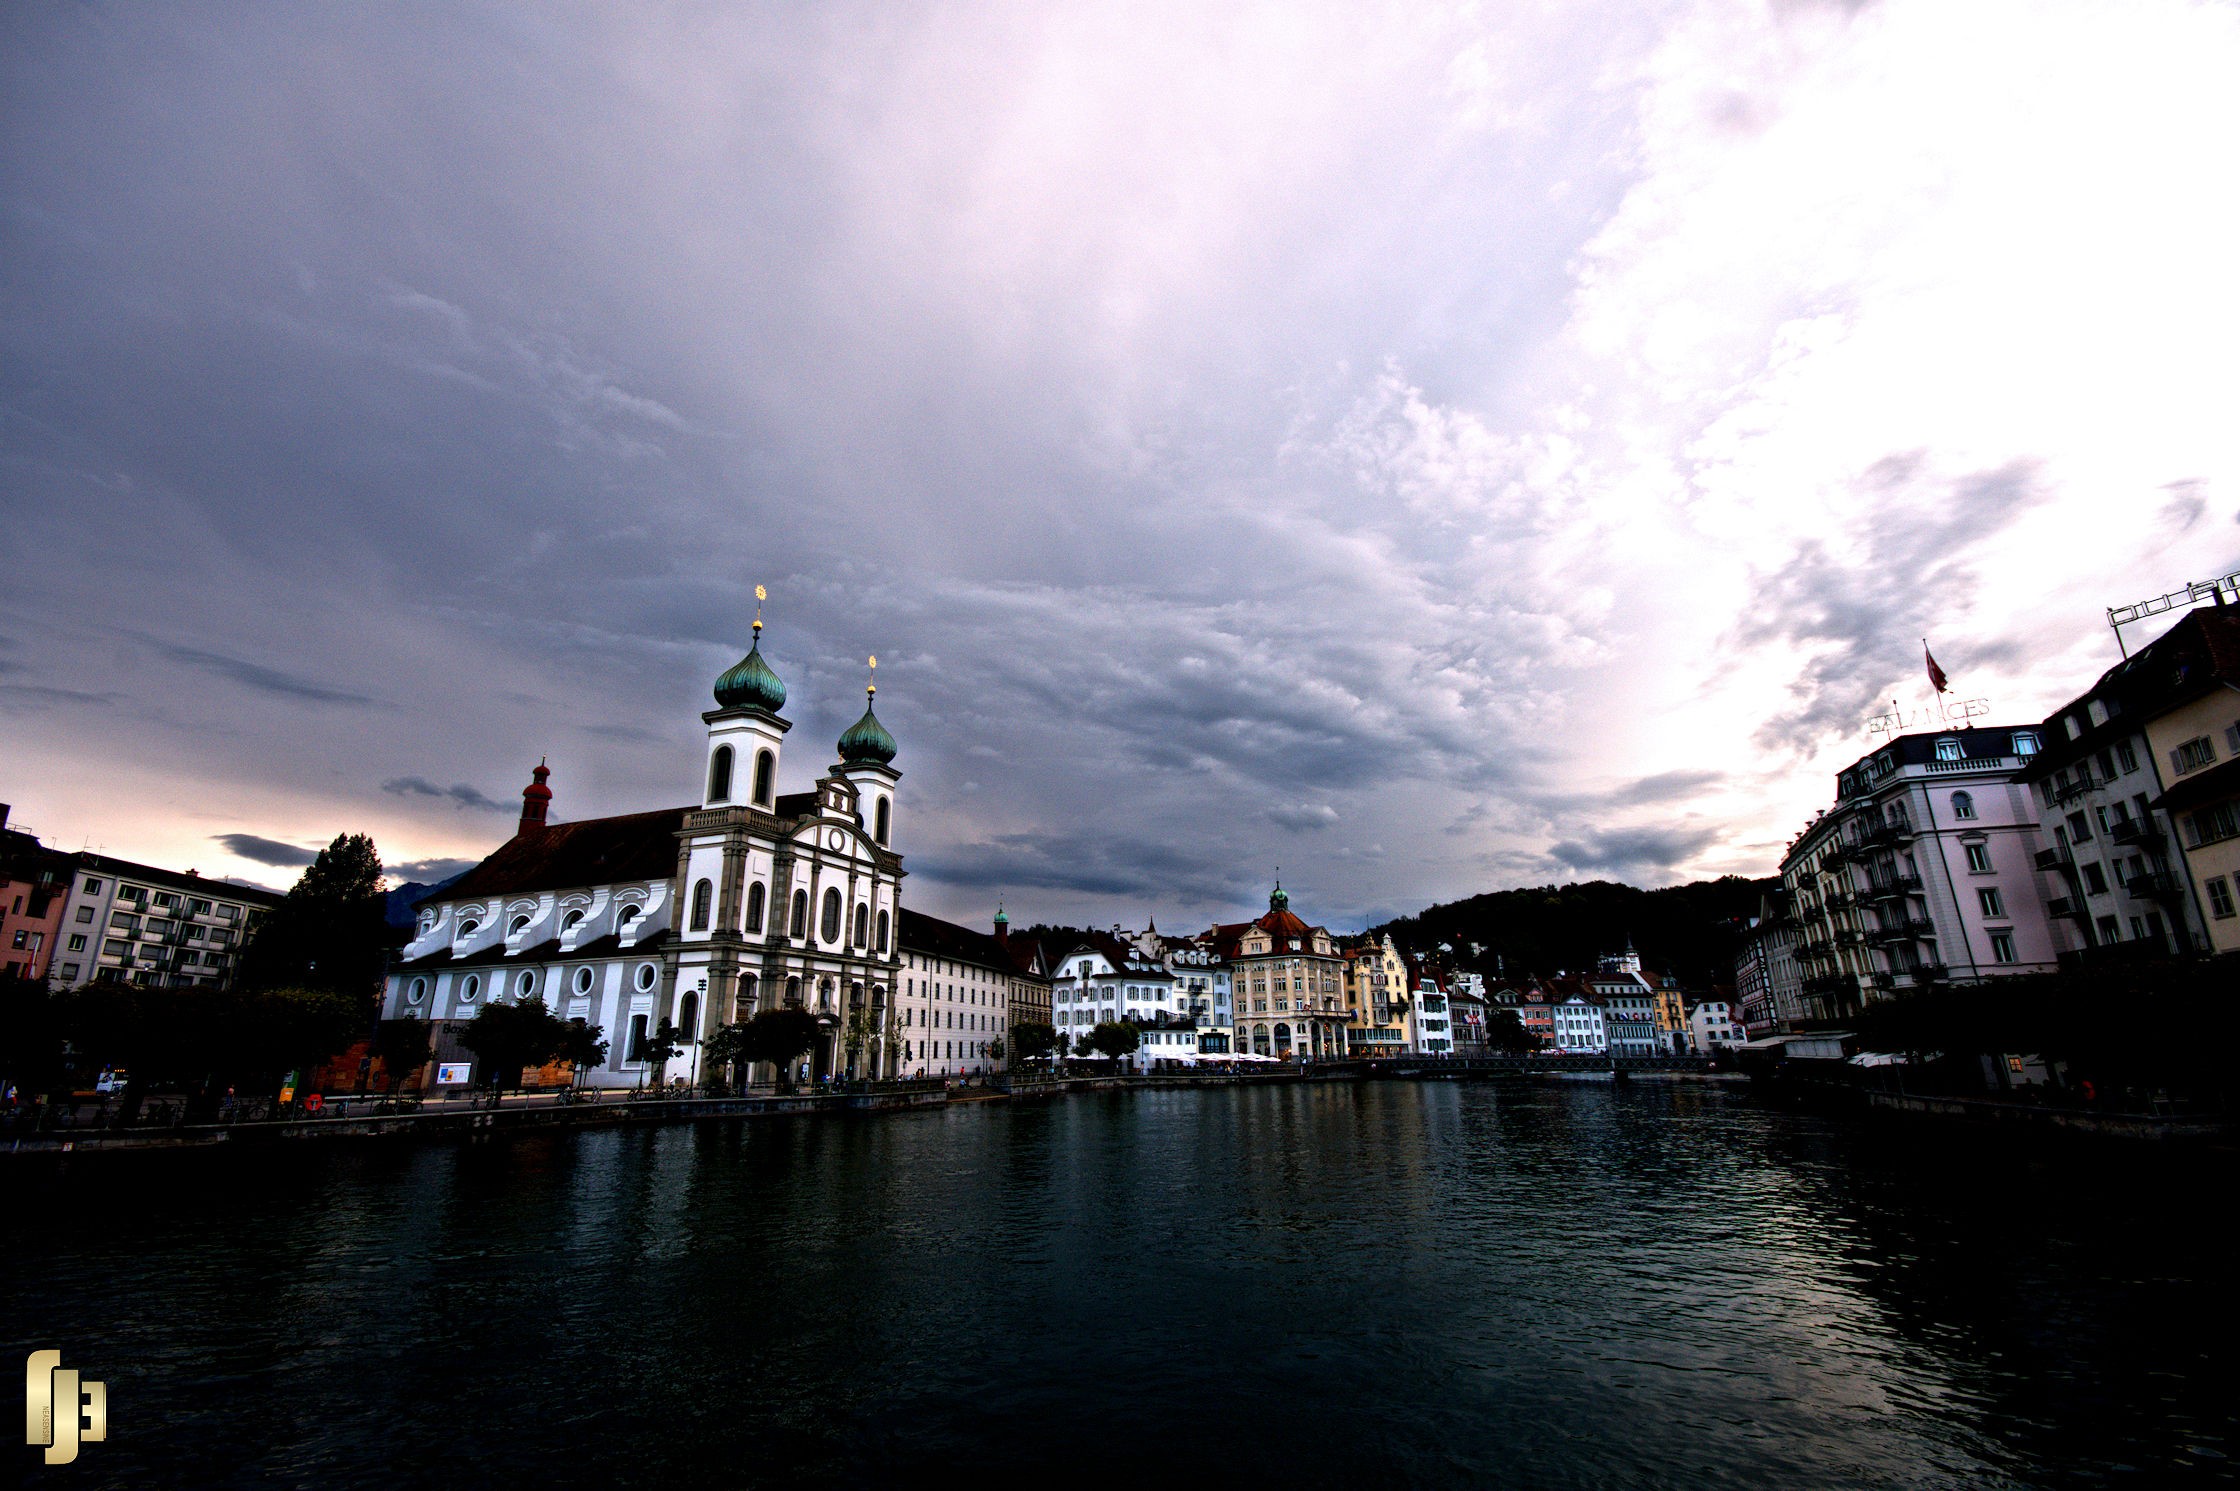 Luzern après l'orage